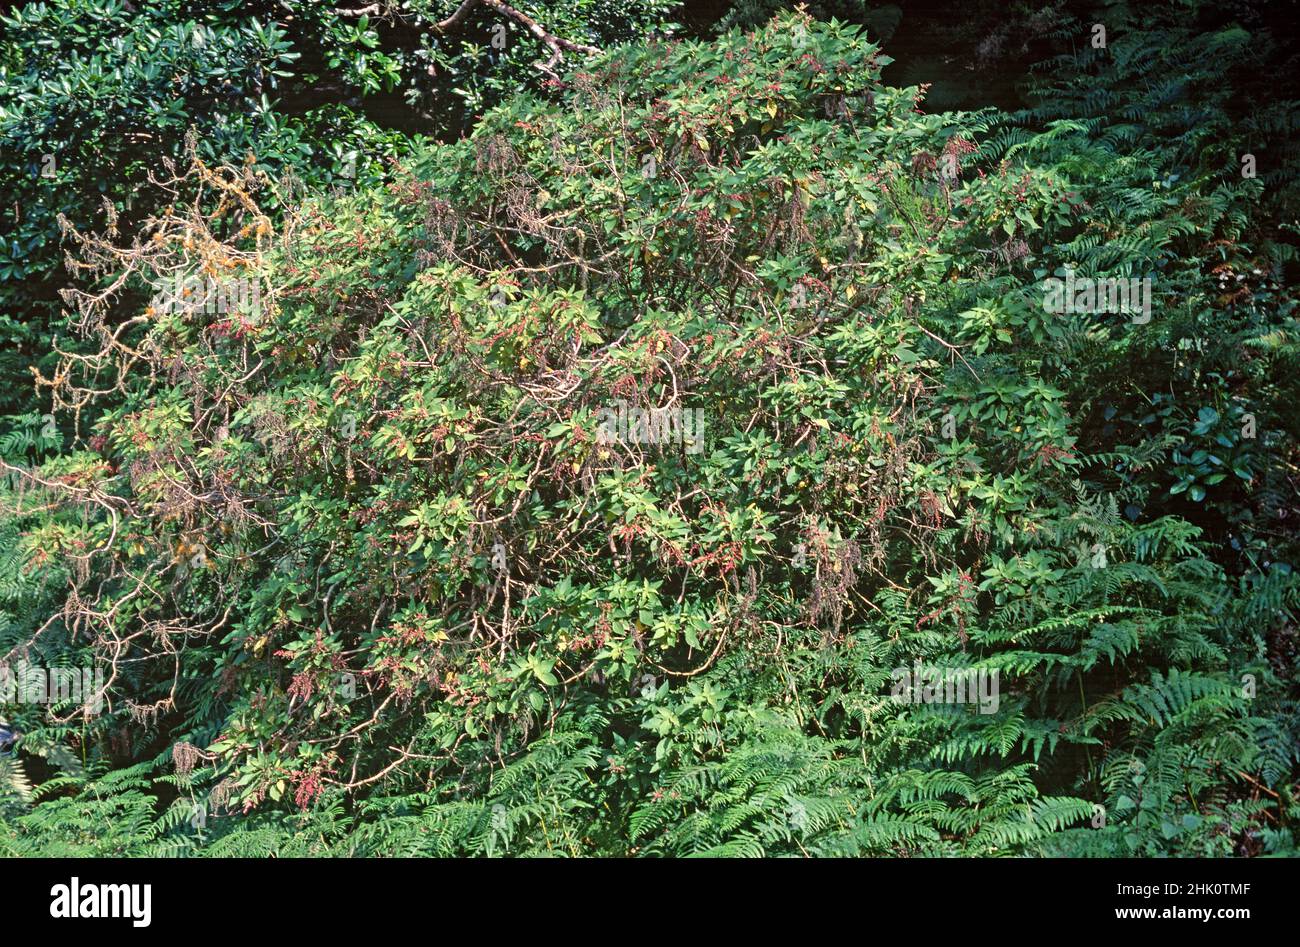 Estrelladera or ortigon de monte (Gesnouinia arborea) is a shrub endemic to Canary Islands except Lanzarote and Fuerteventura. This photo was taken Stock Photo